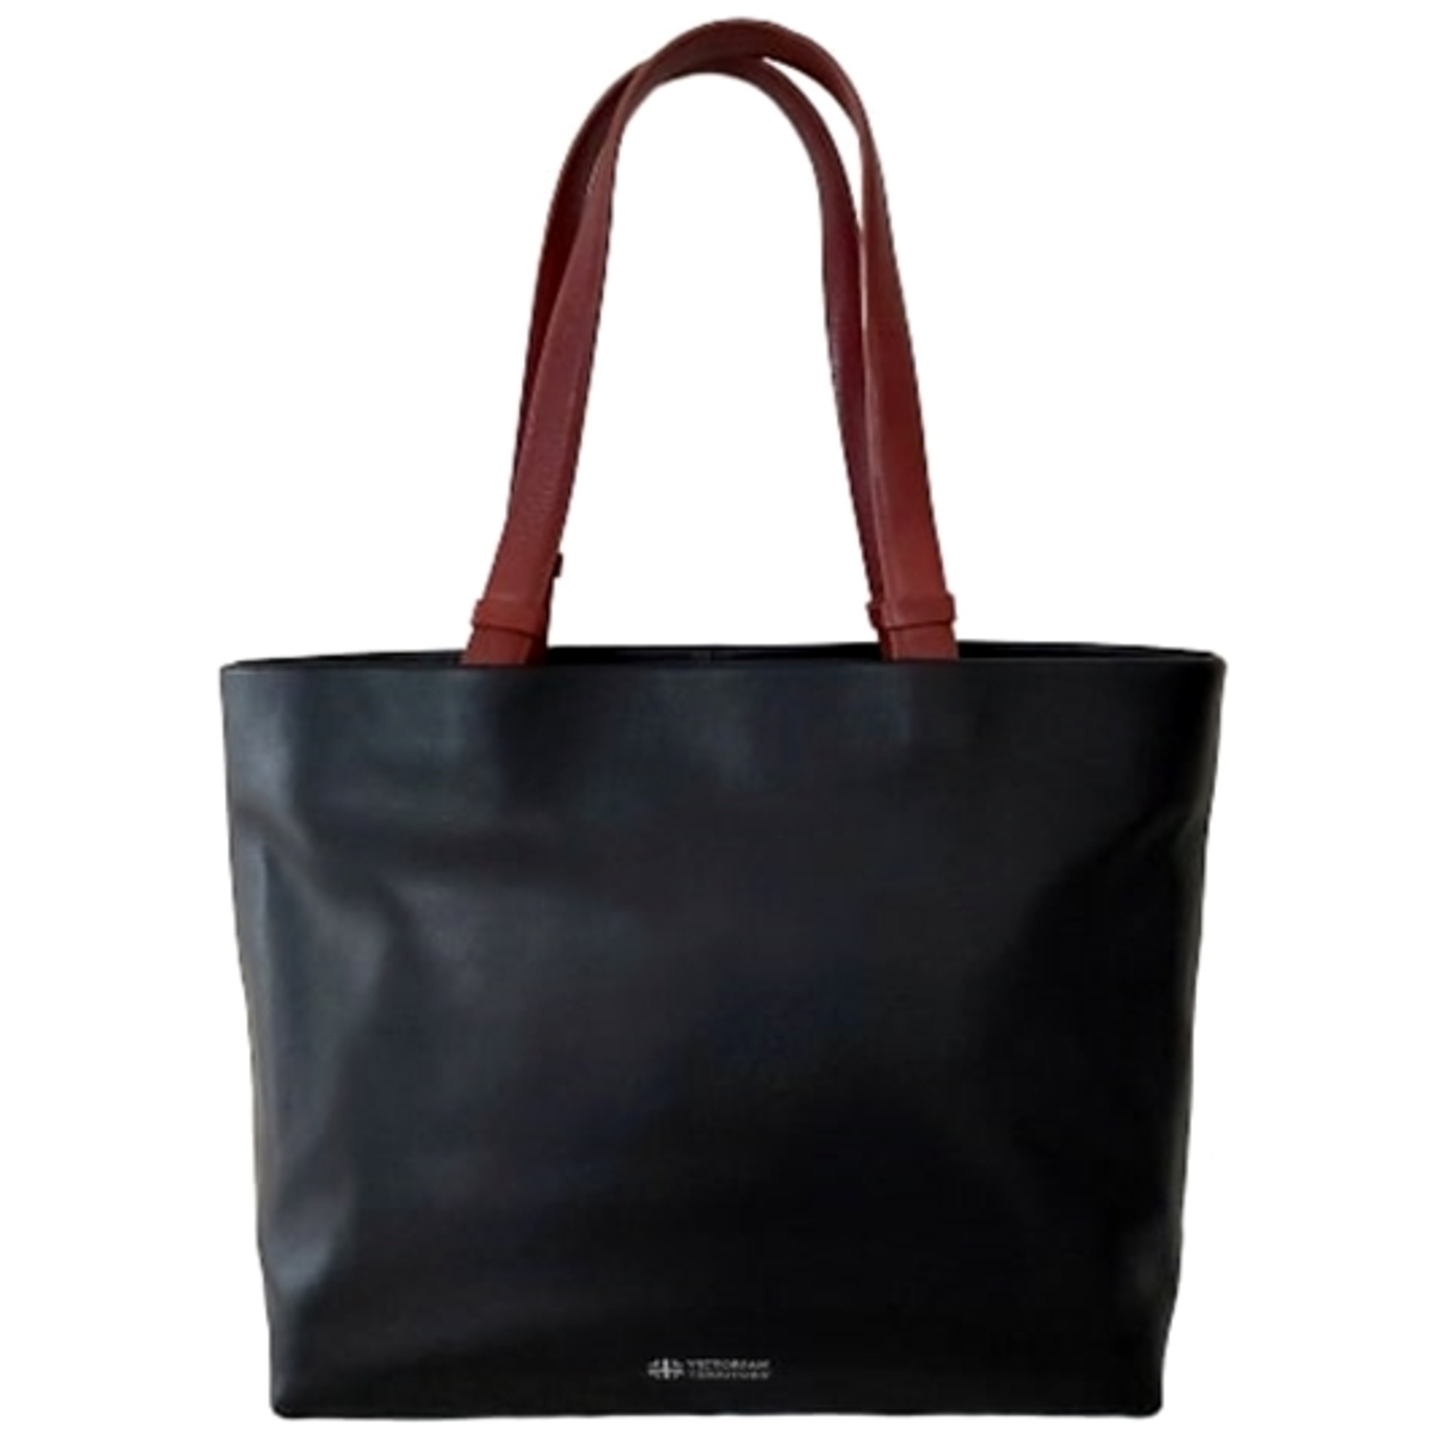 Sintra Premium Shopper Shoulder Bag Black & Brown